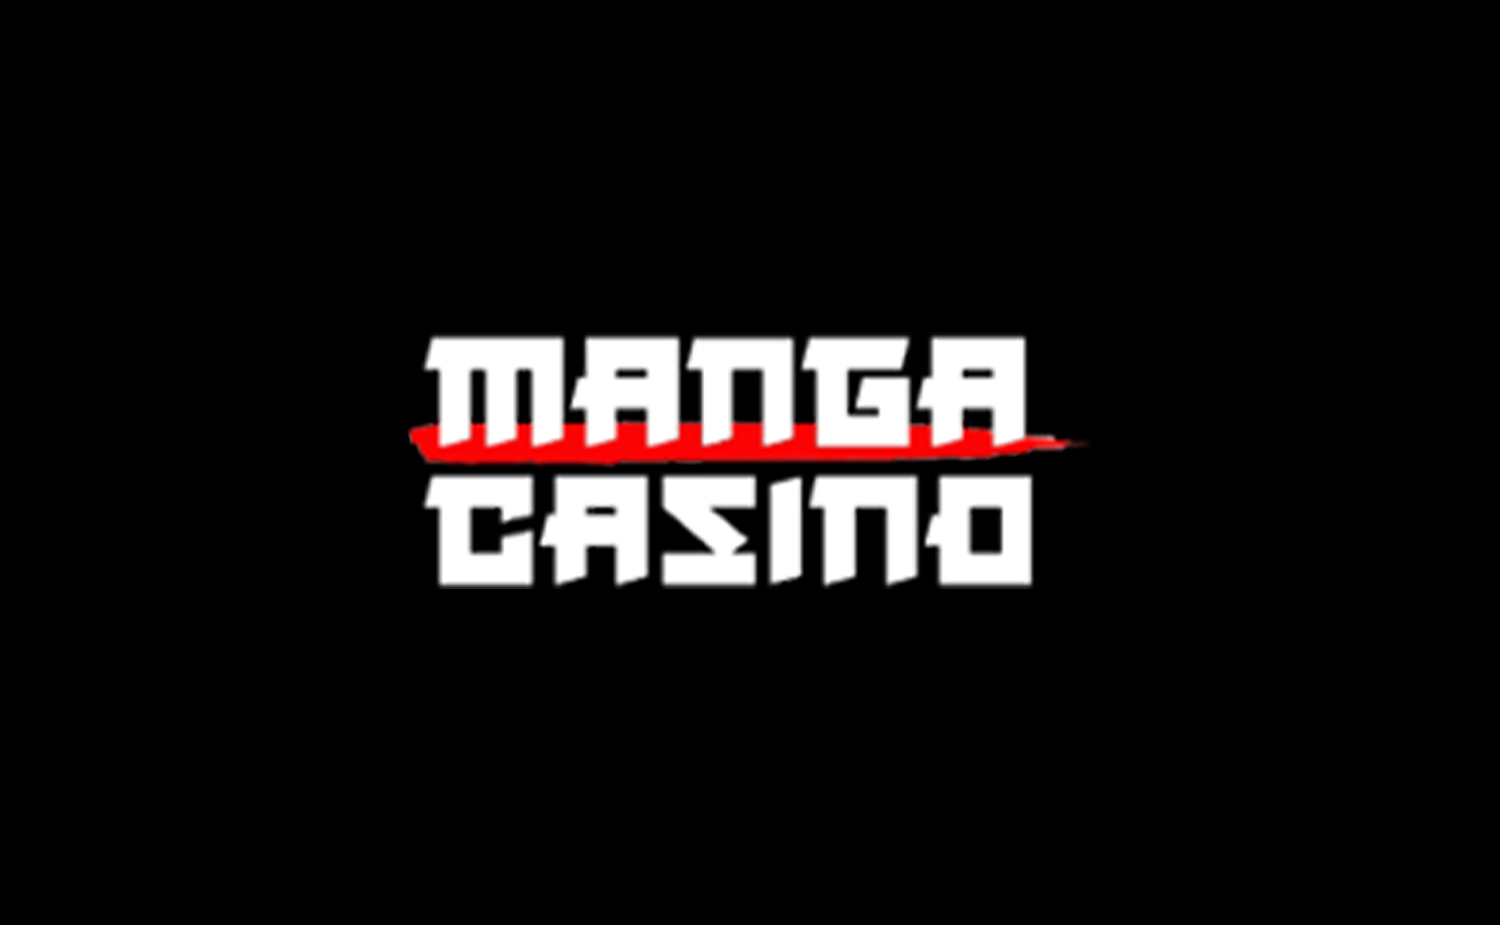 casino-bonus-url